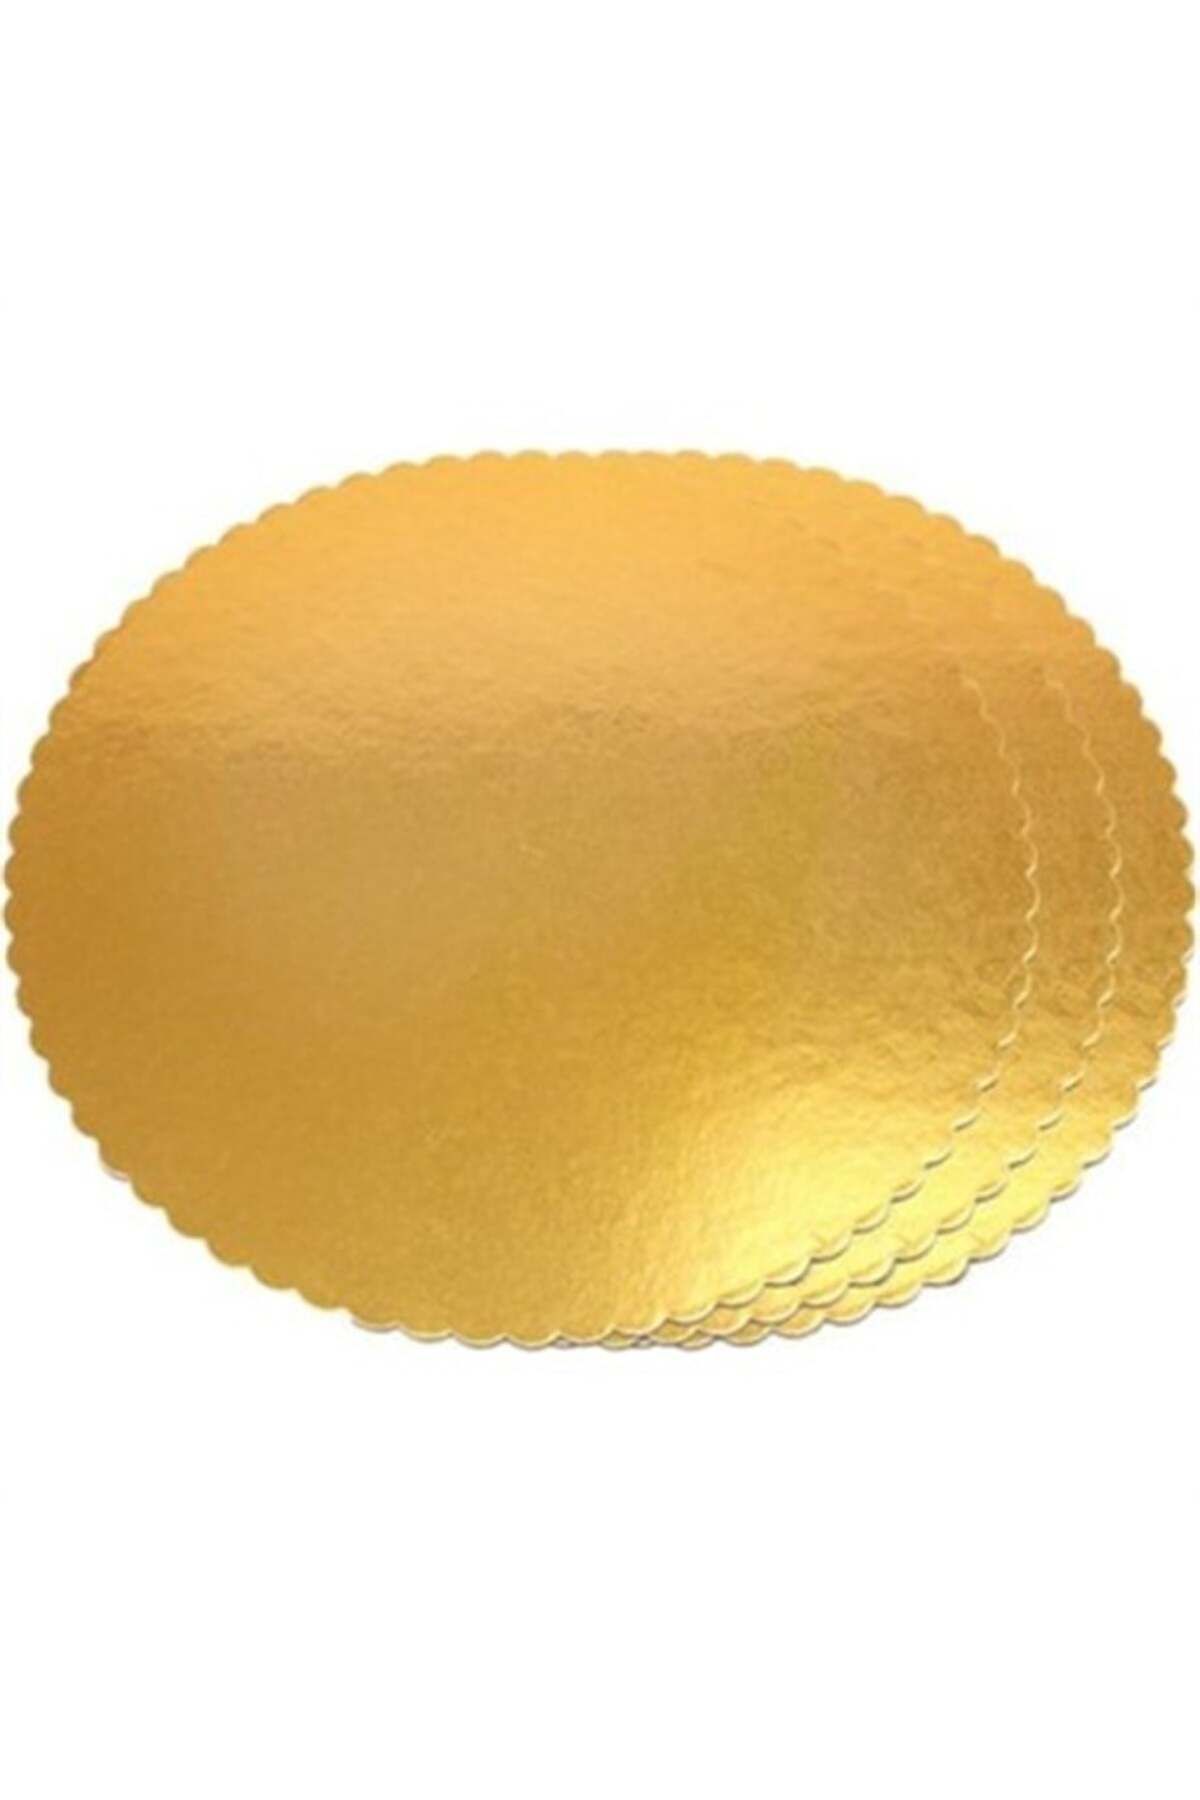 Adana Pasta Malzemeleri Gold Kalın 11 Cm